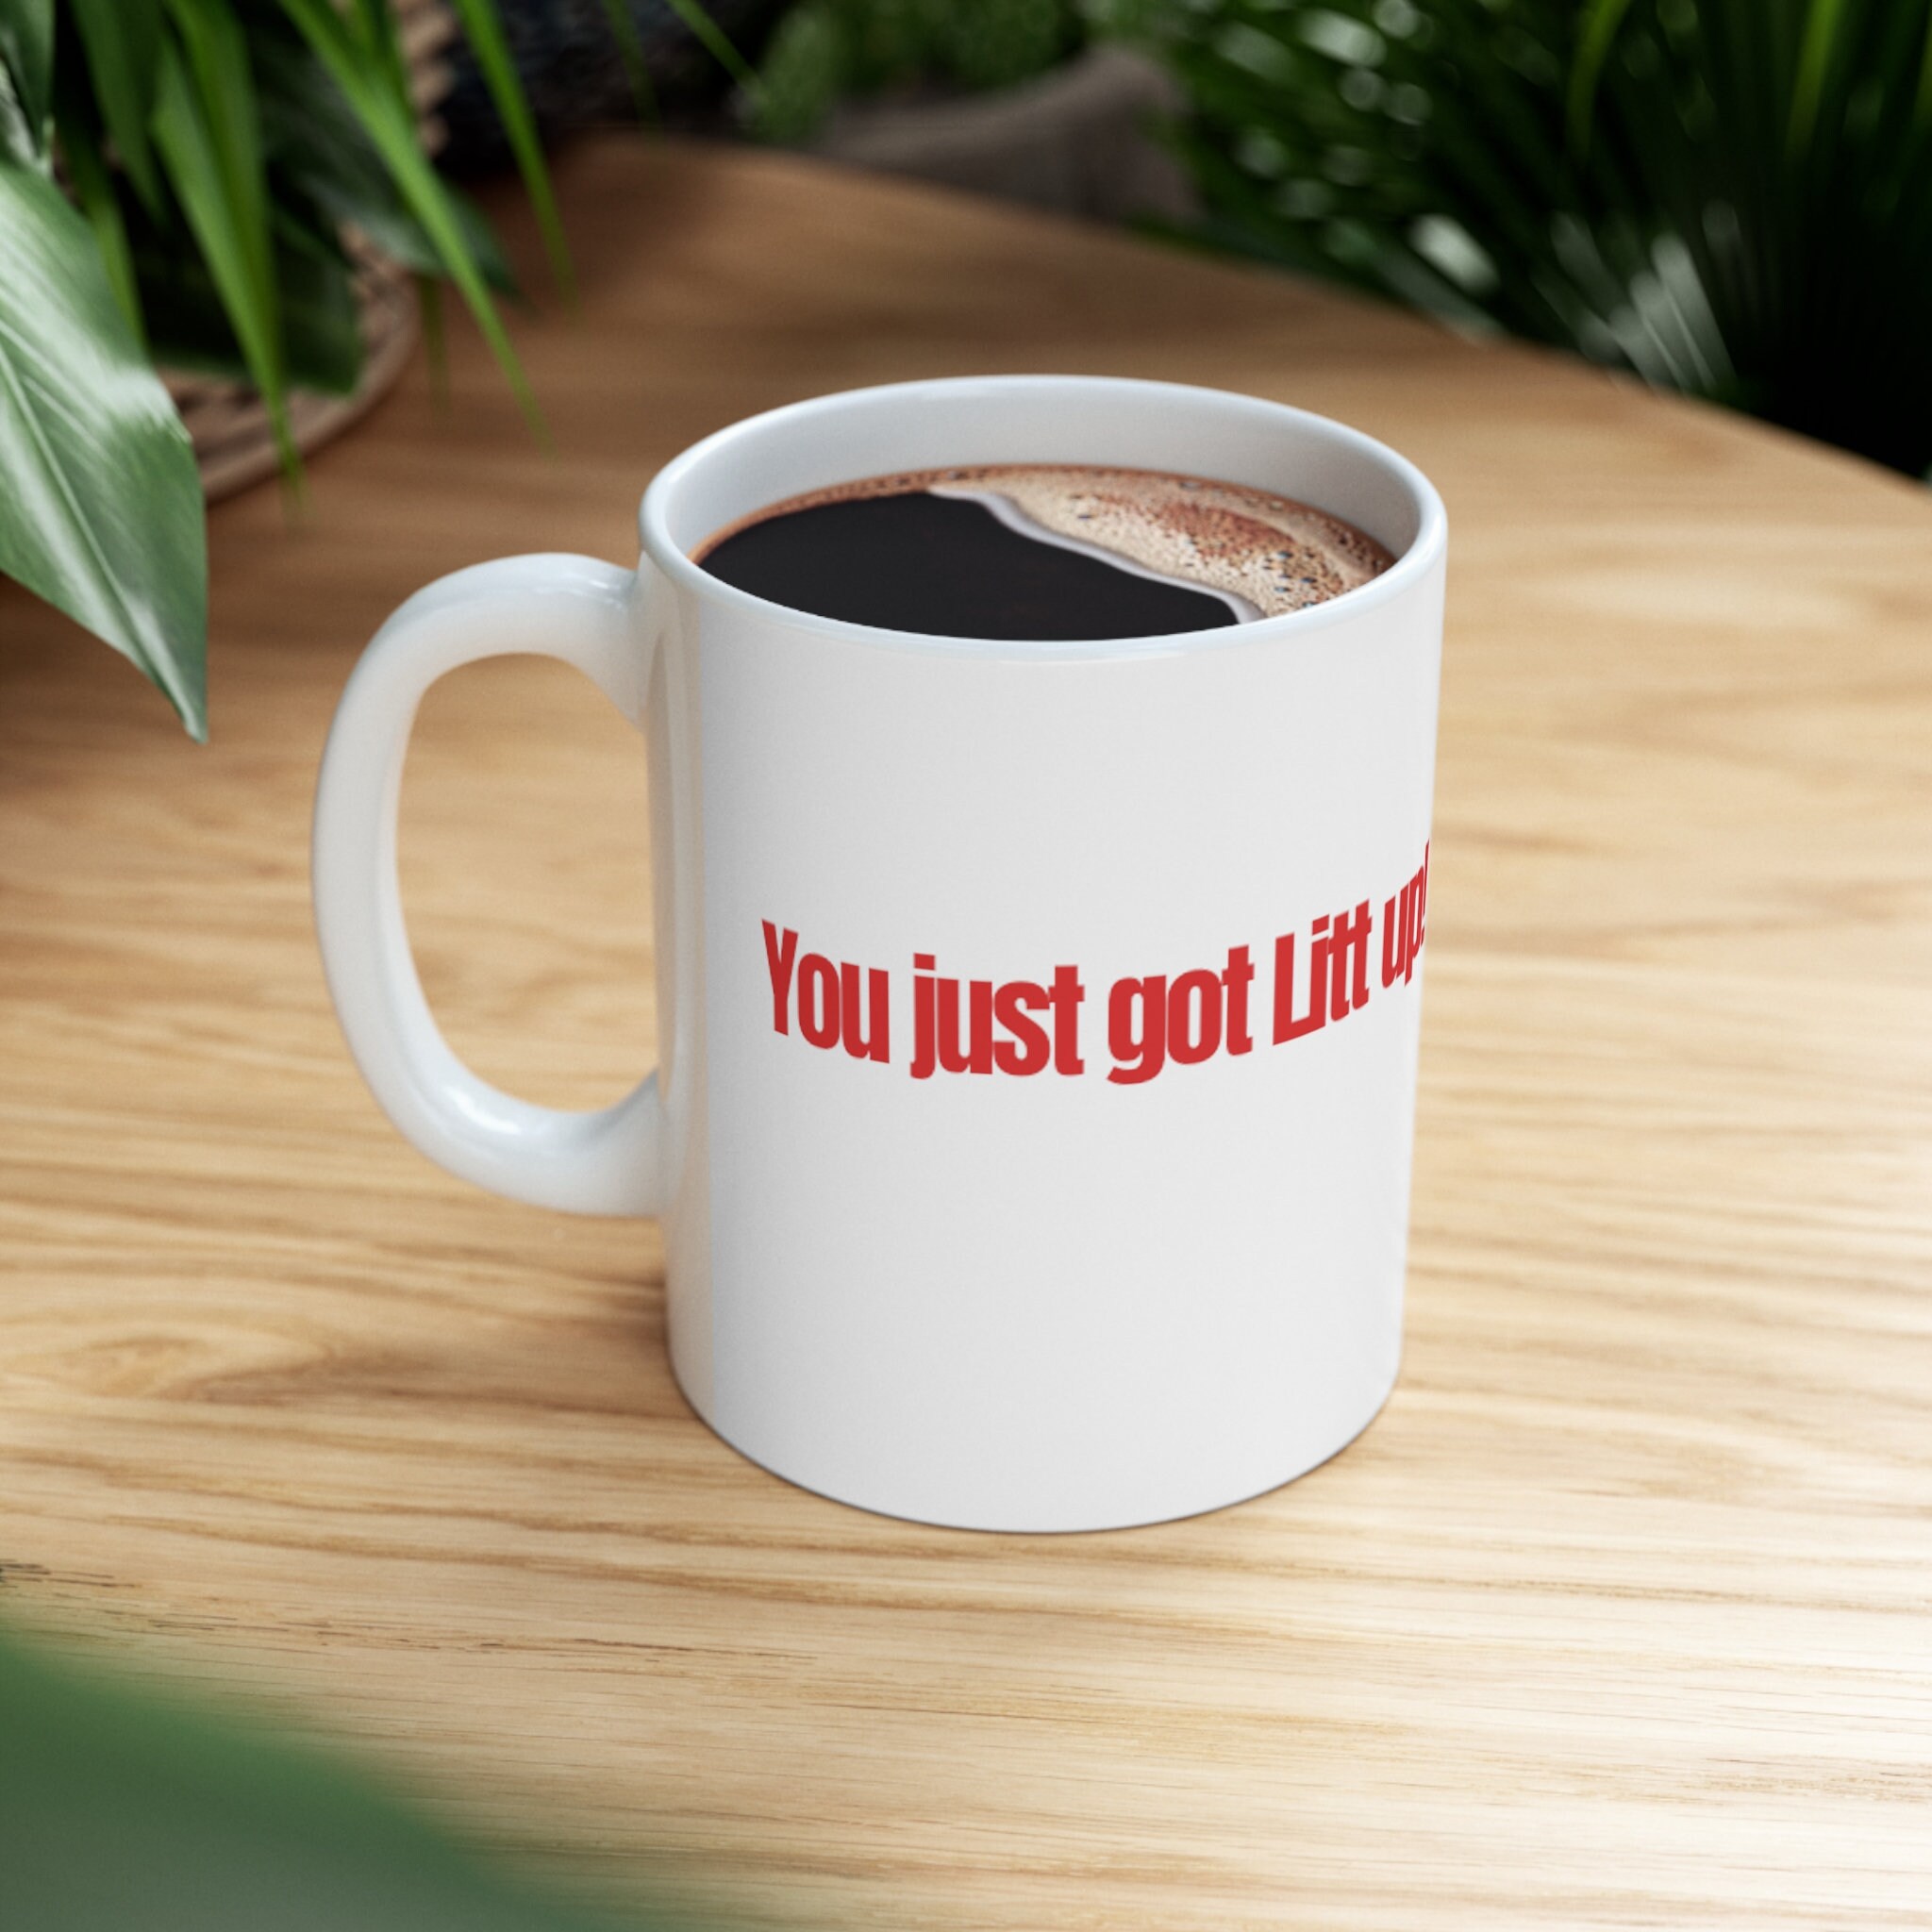 You Just Got Litt Up - Louis Litt- Harvey Specter - Suits Coffee Mug 11oz